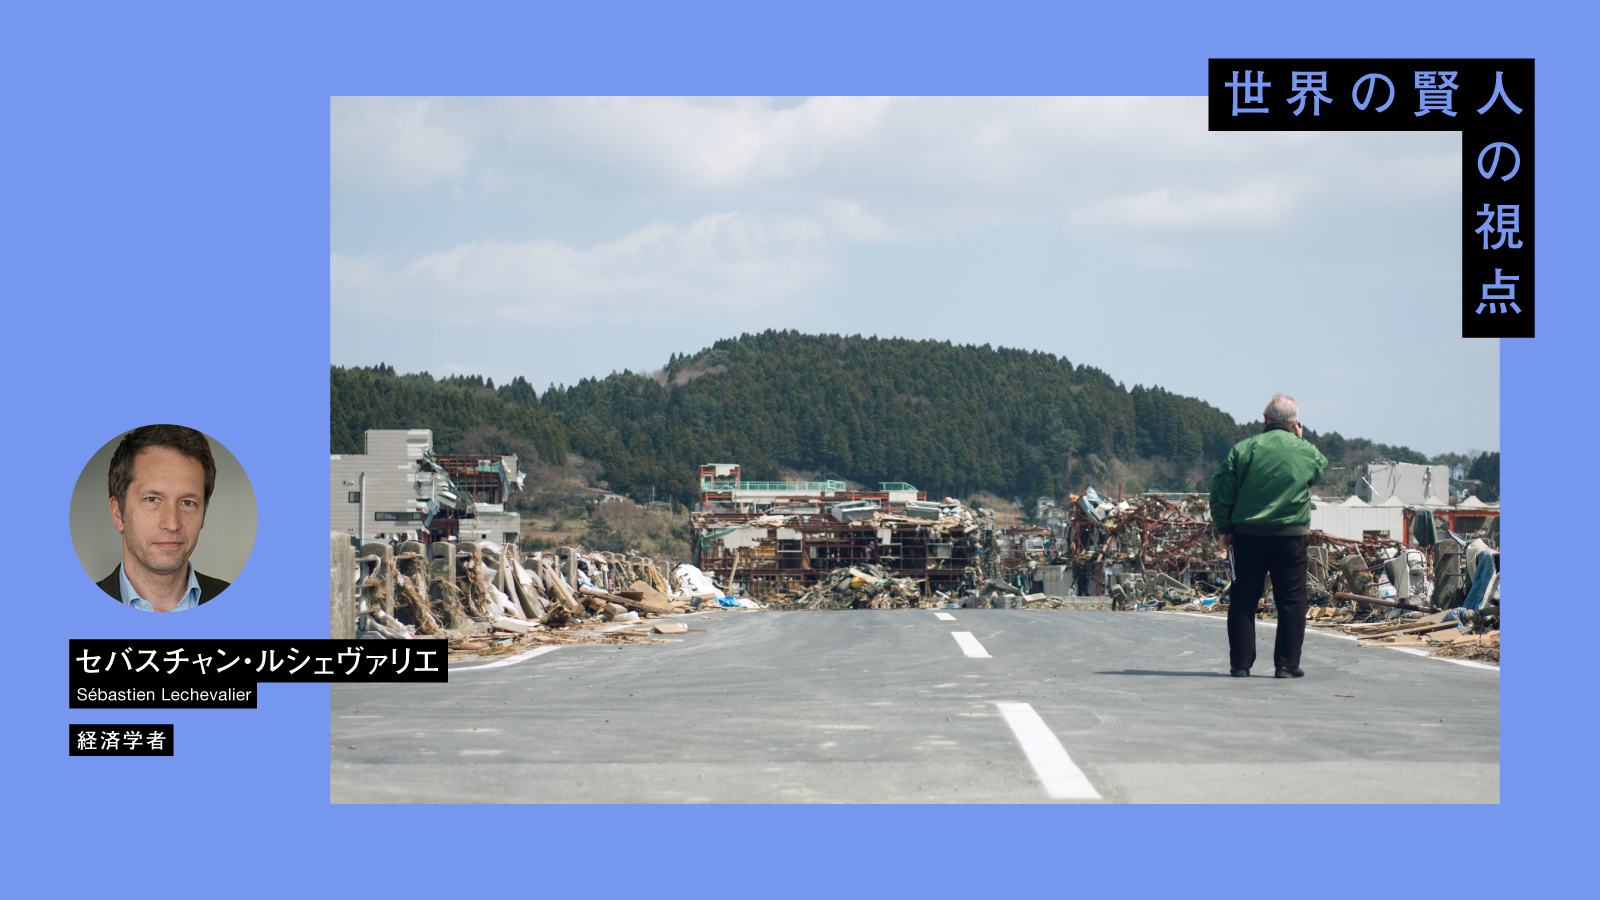 仏経済学者が指摘「日本の災害対策の弱点は、経済の局所集中にある」 | 世界の地震被害の4割は日本から